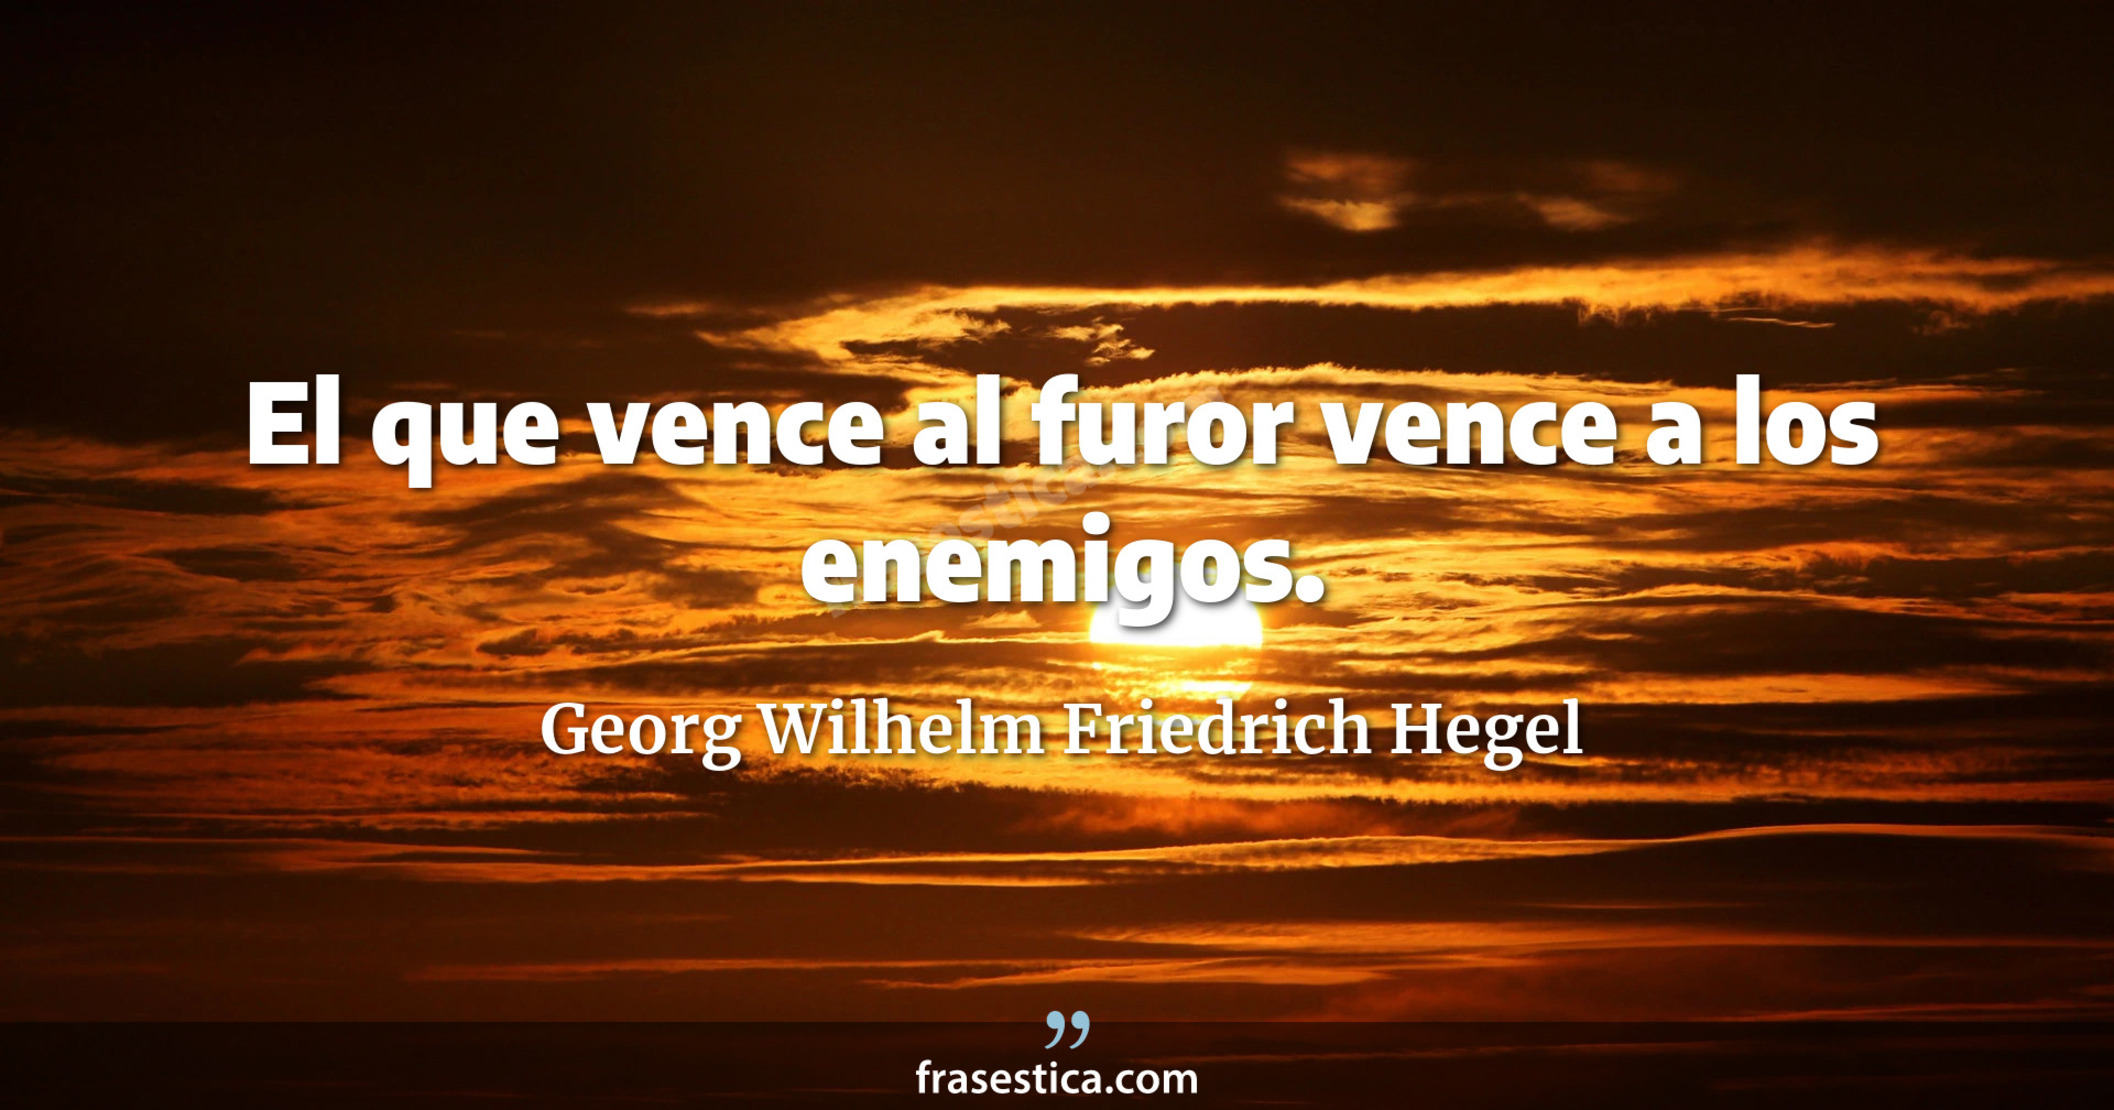 El que vence al furor vence a los enemigos. - Georg Wilhelm Friedrich Hegel